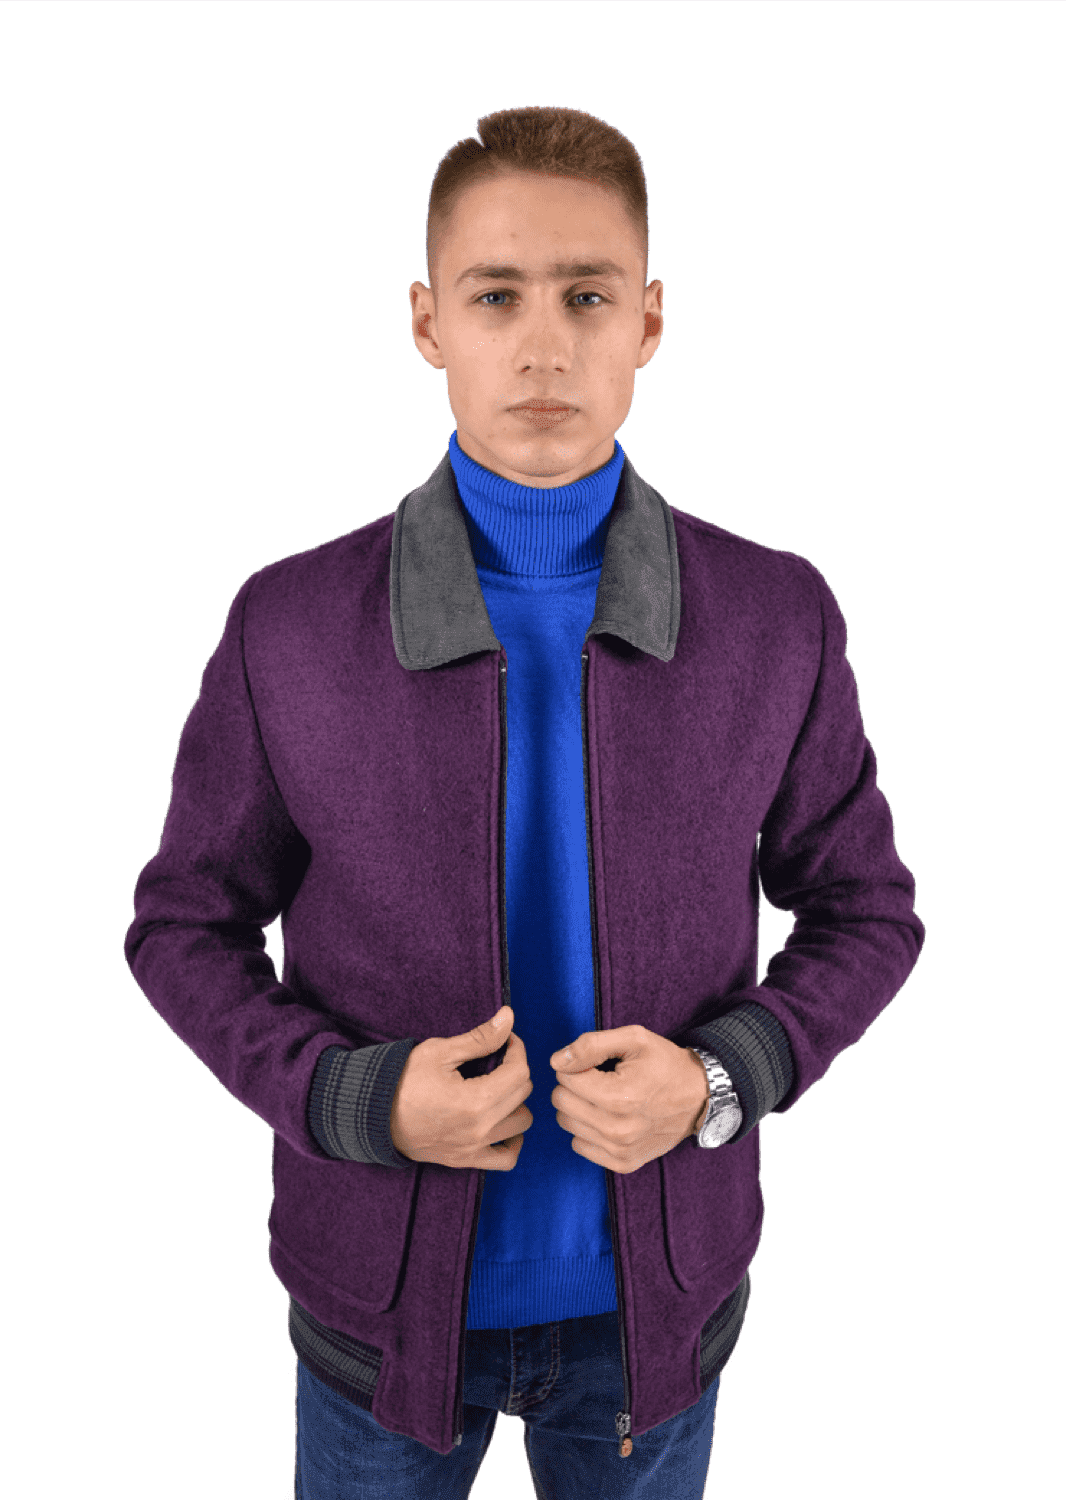 Куртка пилот с отложенным воротником фиолетовая (54) PIZHON 3820-04, размер 54, цвет фиолетовый